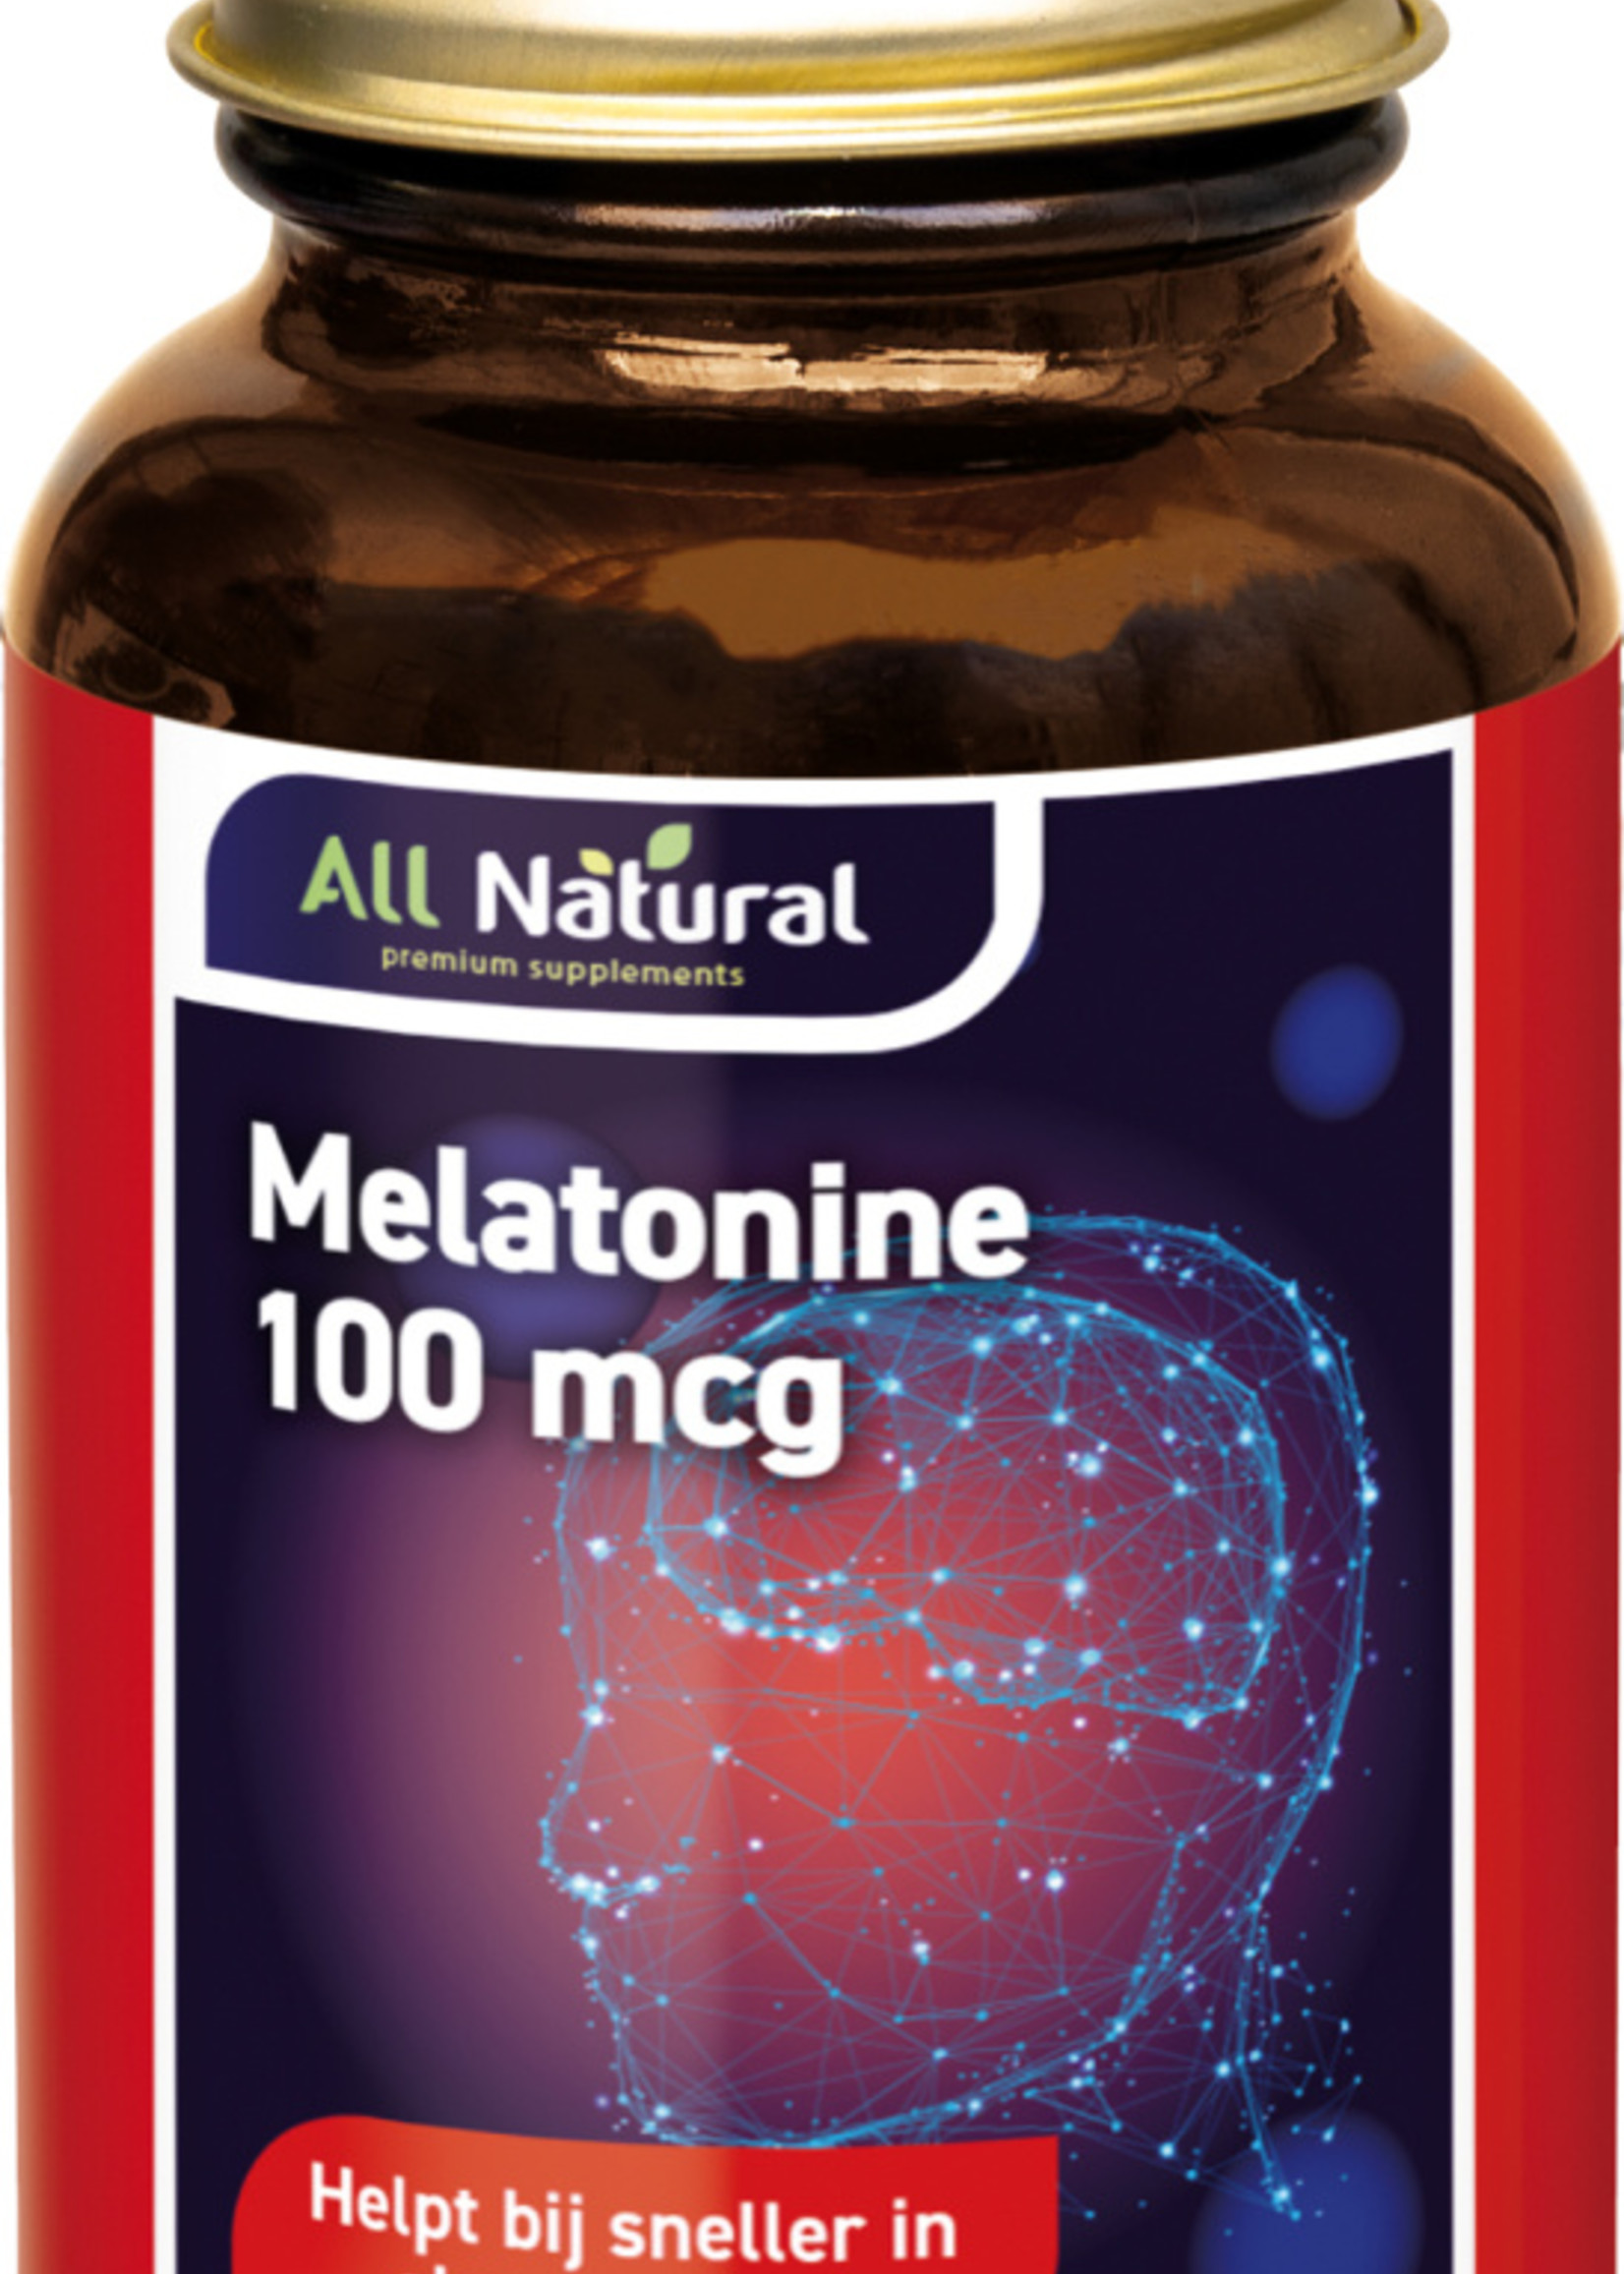 All Natural Melatonine 100mcg 500tb